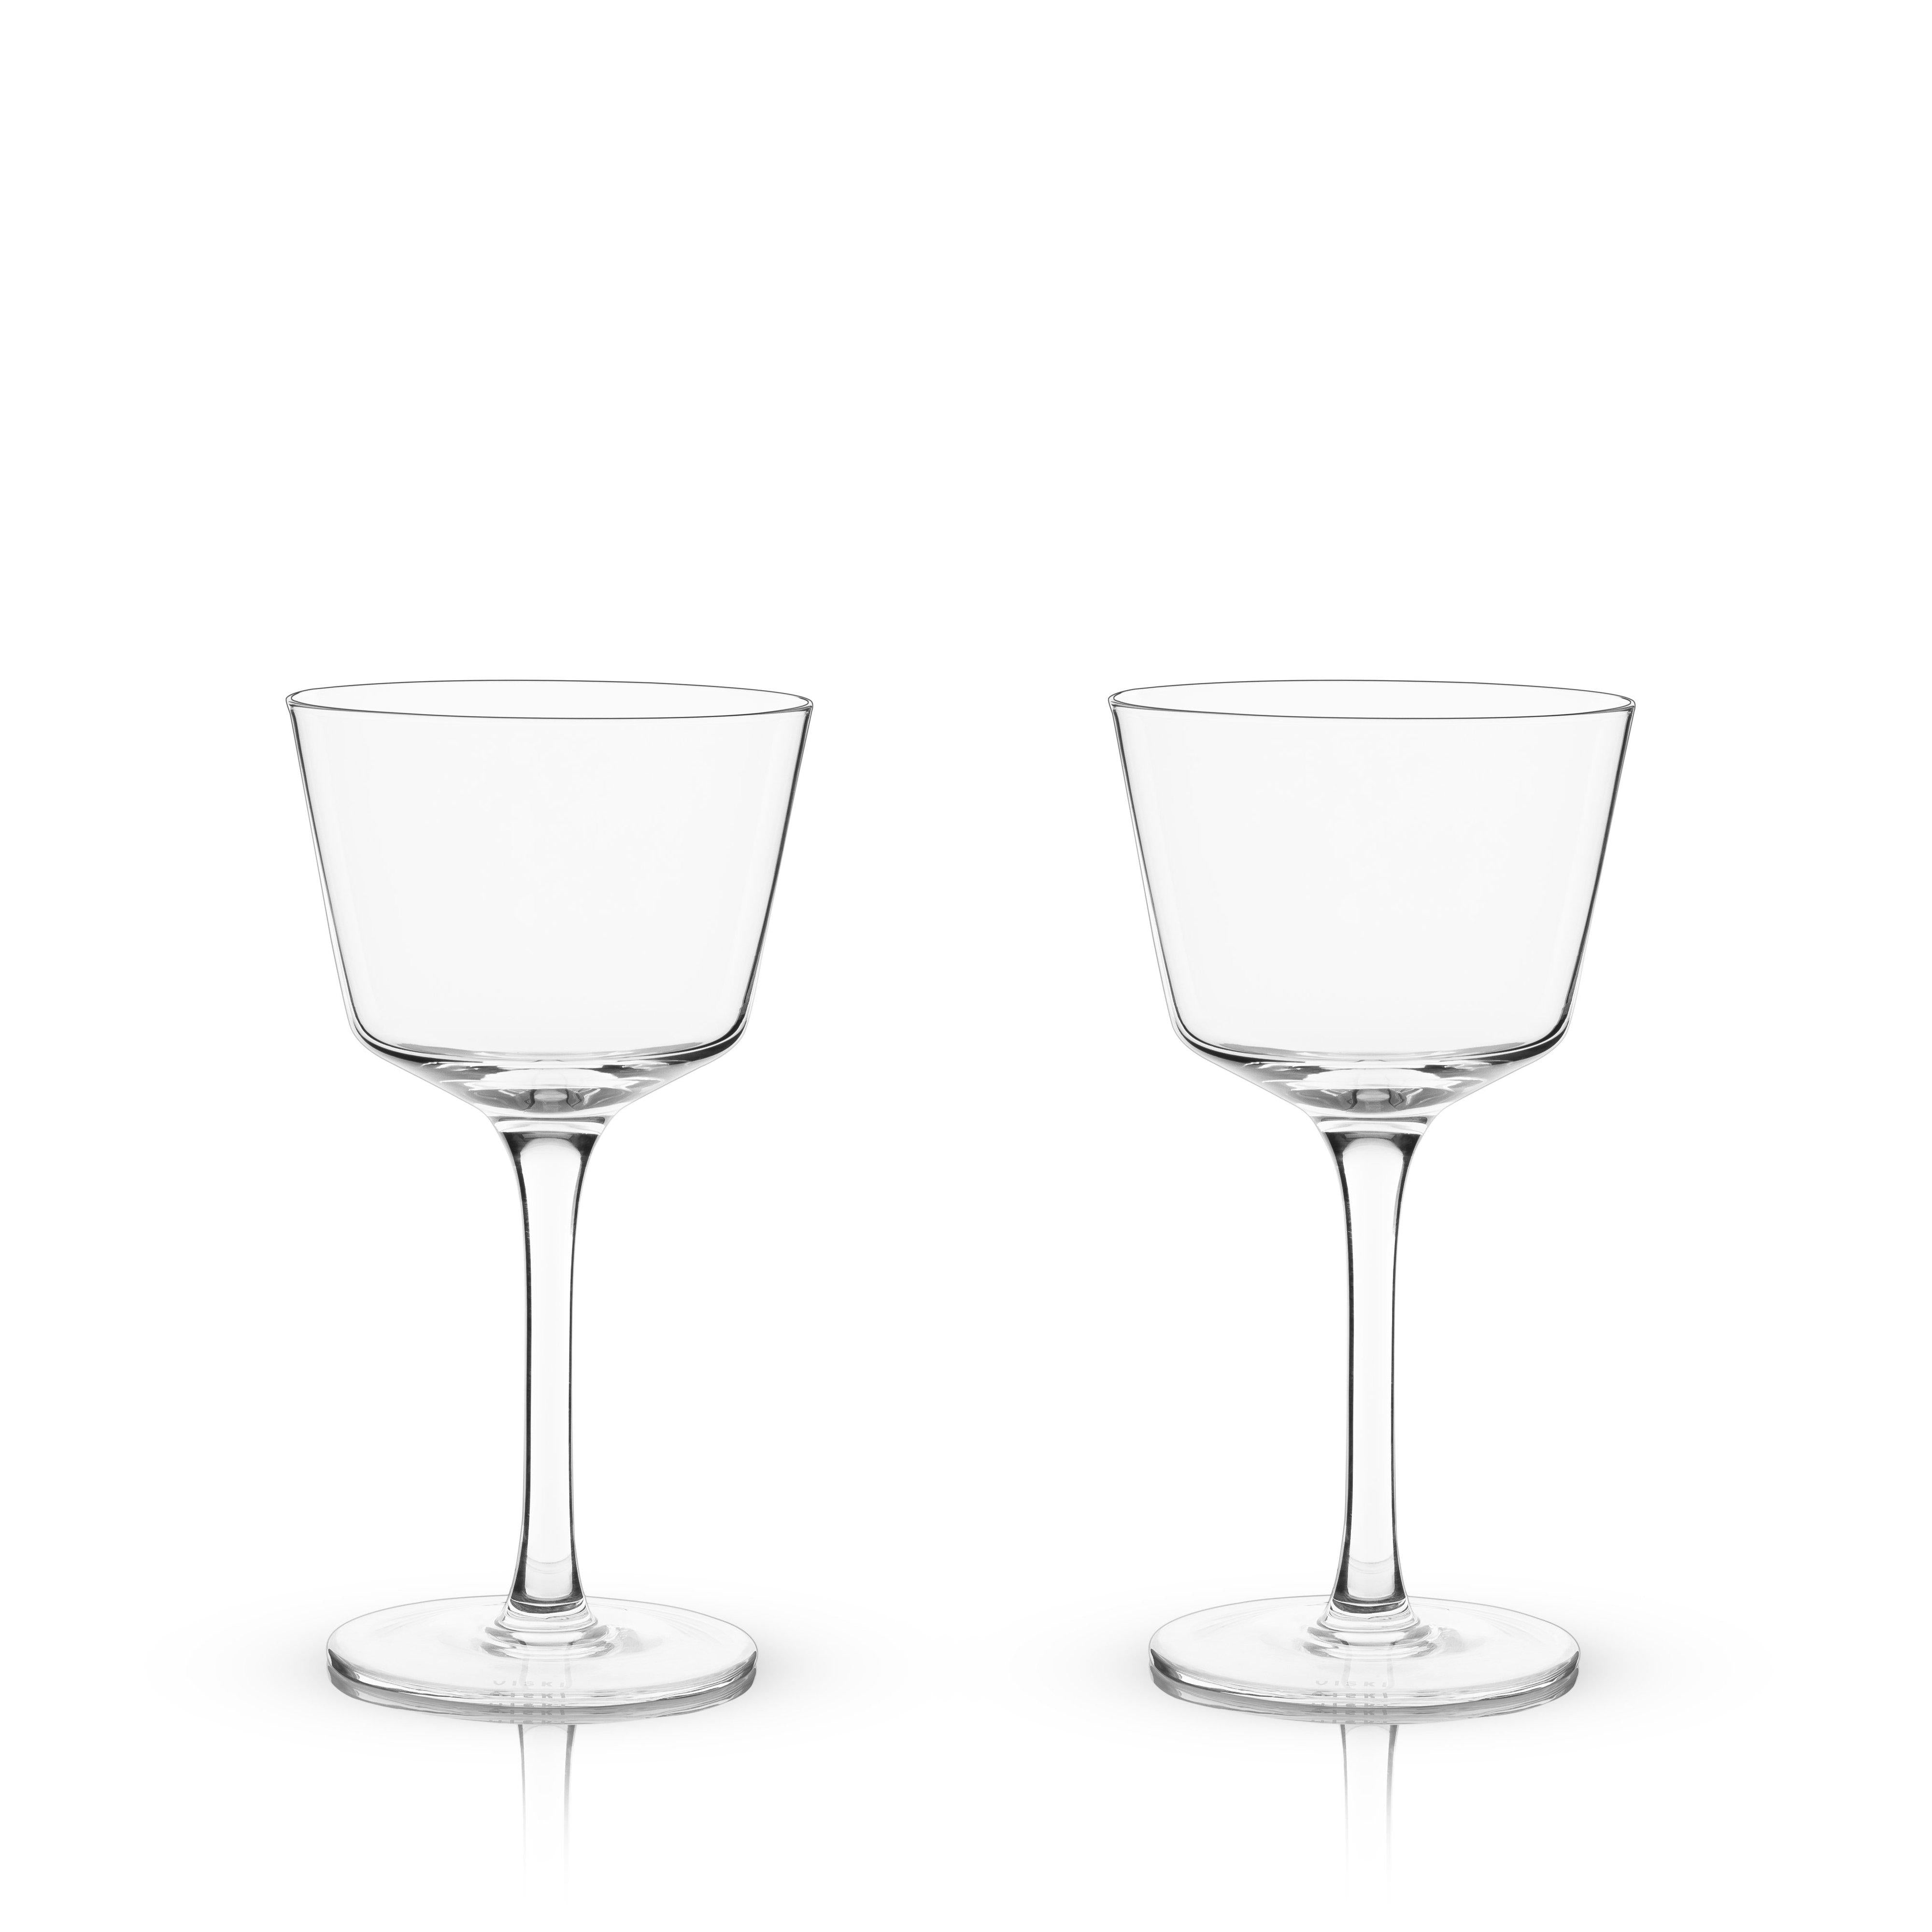 https://dramson.com/cdn/shop/products/cocktail-glasses-angled-crystal-nick-nora-glasses-set-of-2-viski-2.jpg?v=1620837606